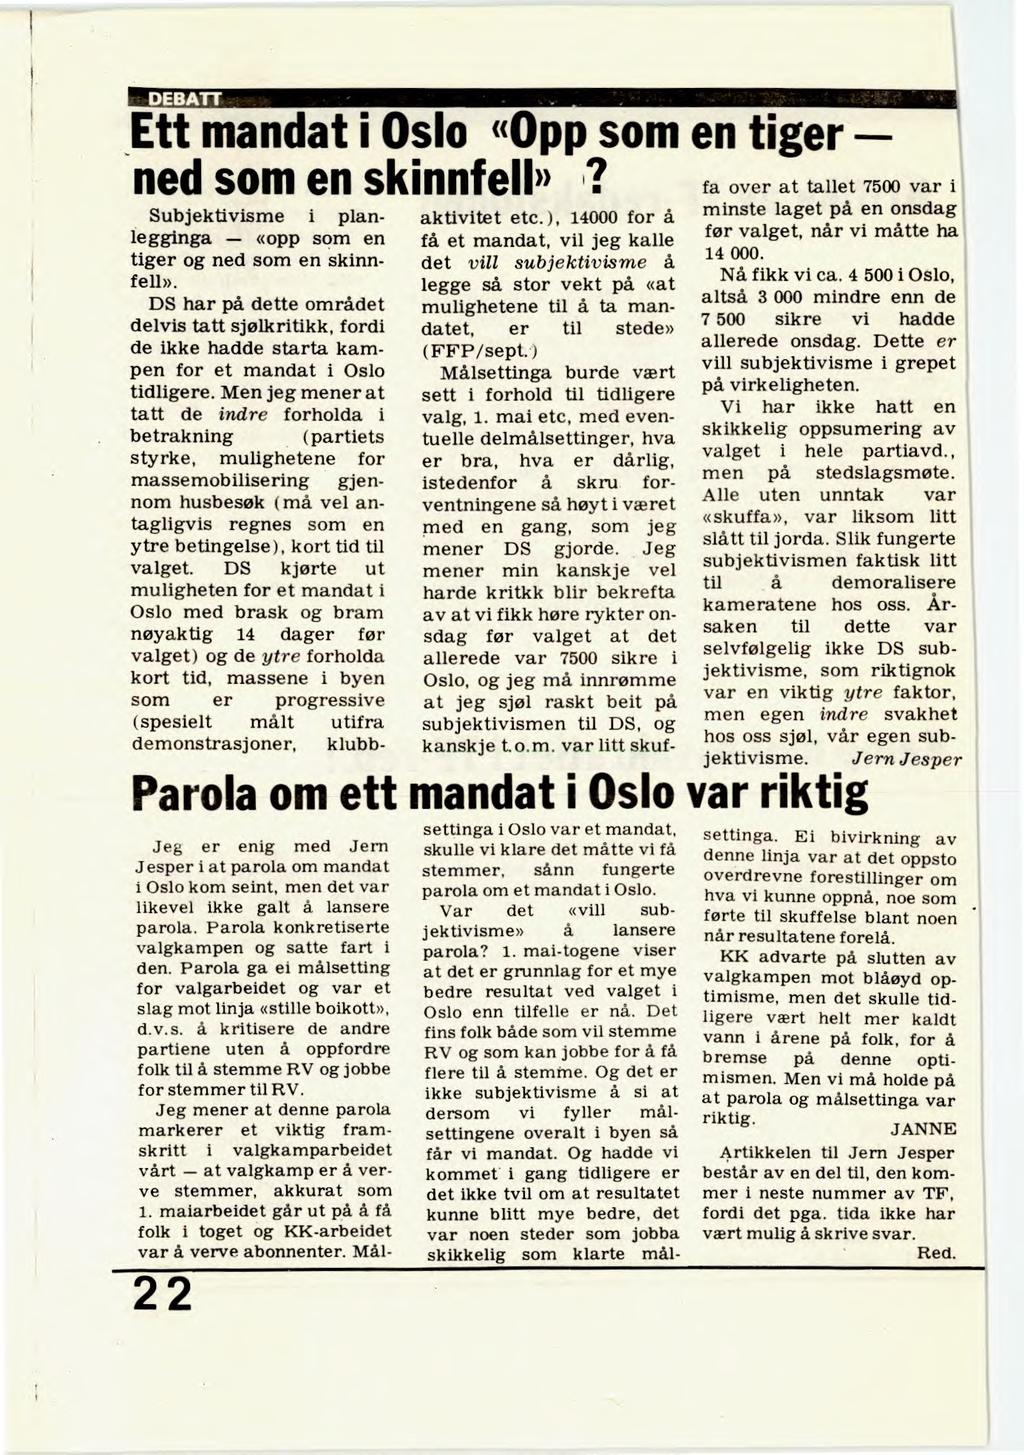 DEBATT Ett mandat i Oslo «Opp som en tiger ned som en skinnfell» i? Subjektivisme i planlegginga «opp som en tiger og ned som en skinnfell».